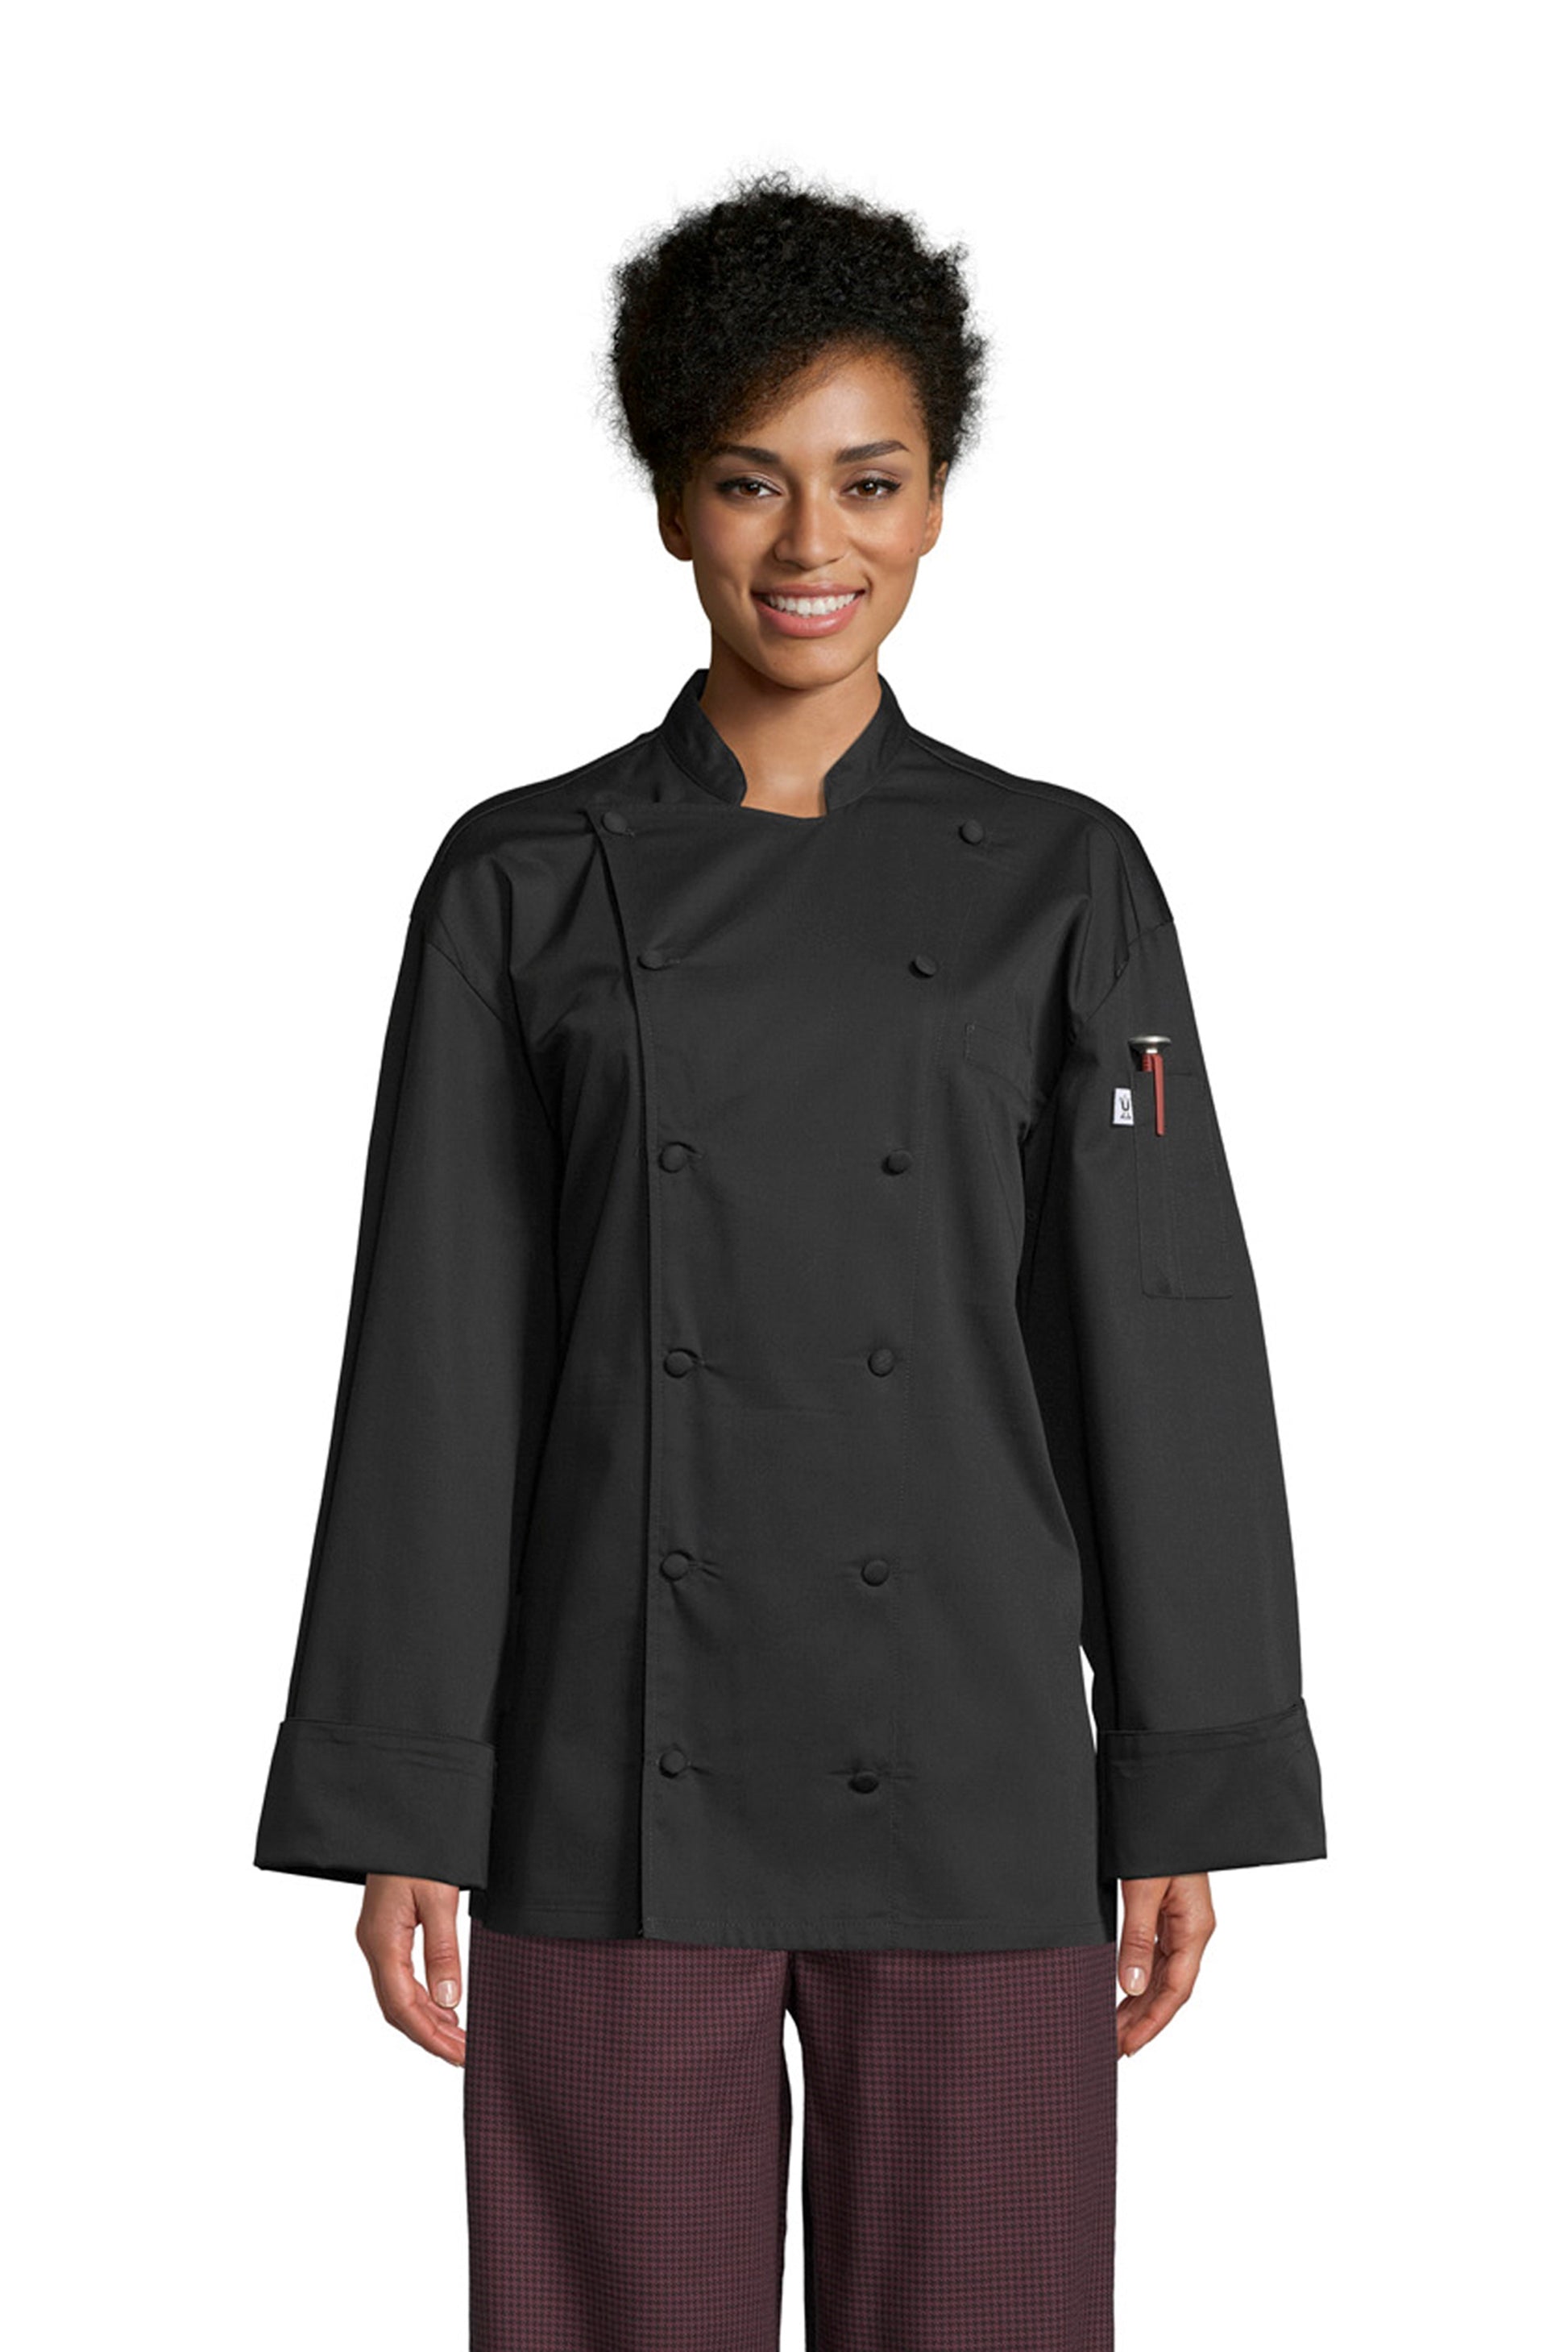 Barbados Pro Vent Chef Coat #0481 *Closeout* (All Sales Final No Retur ...